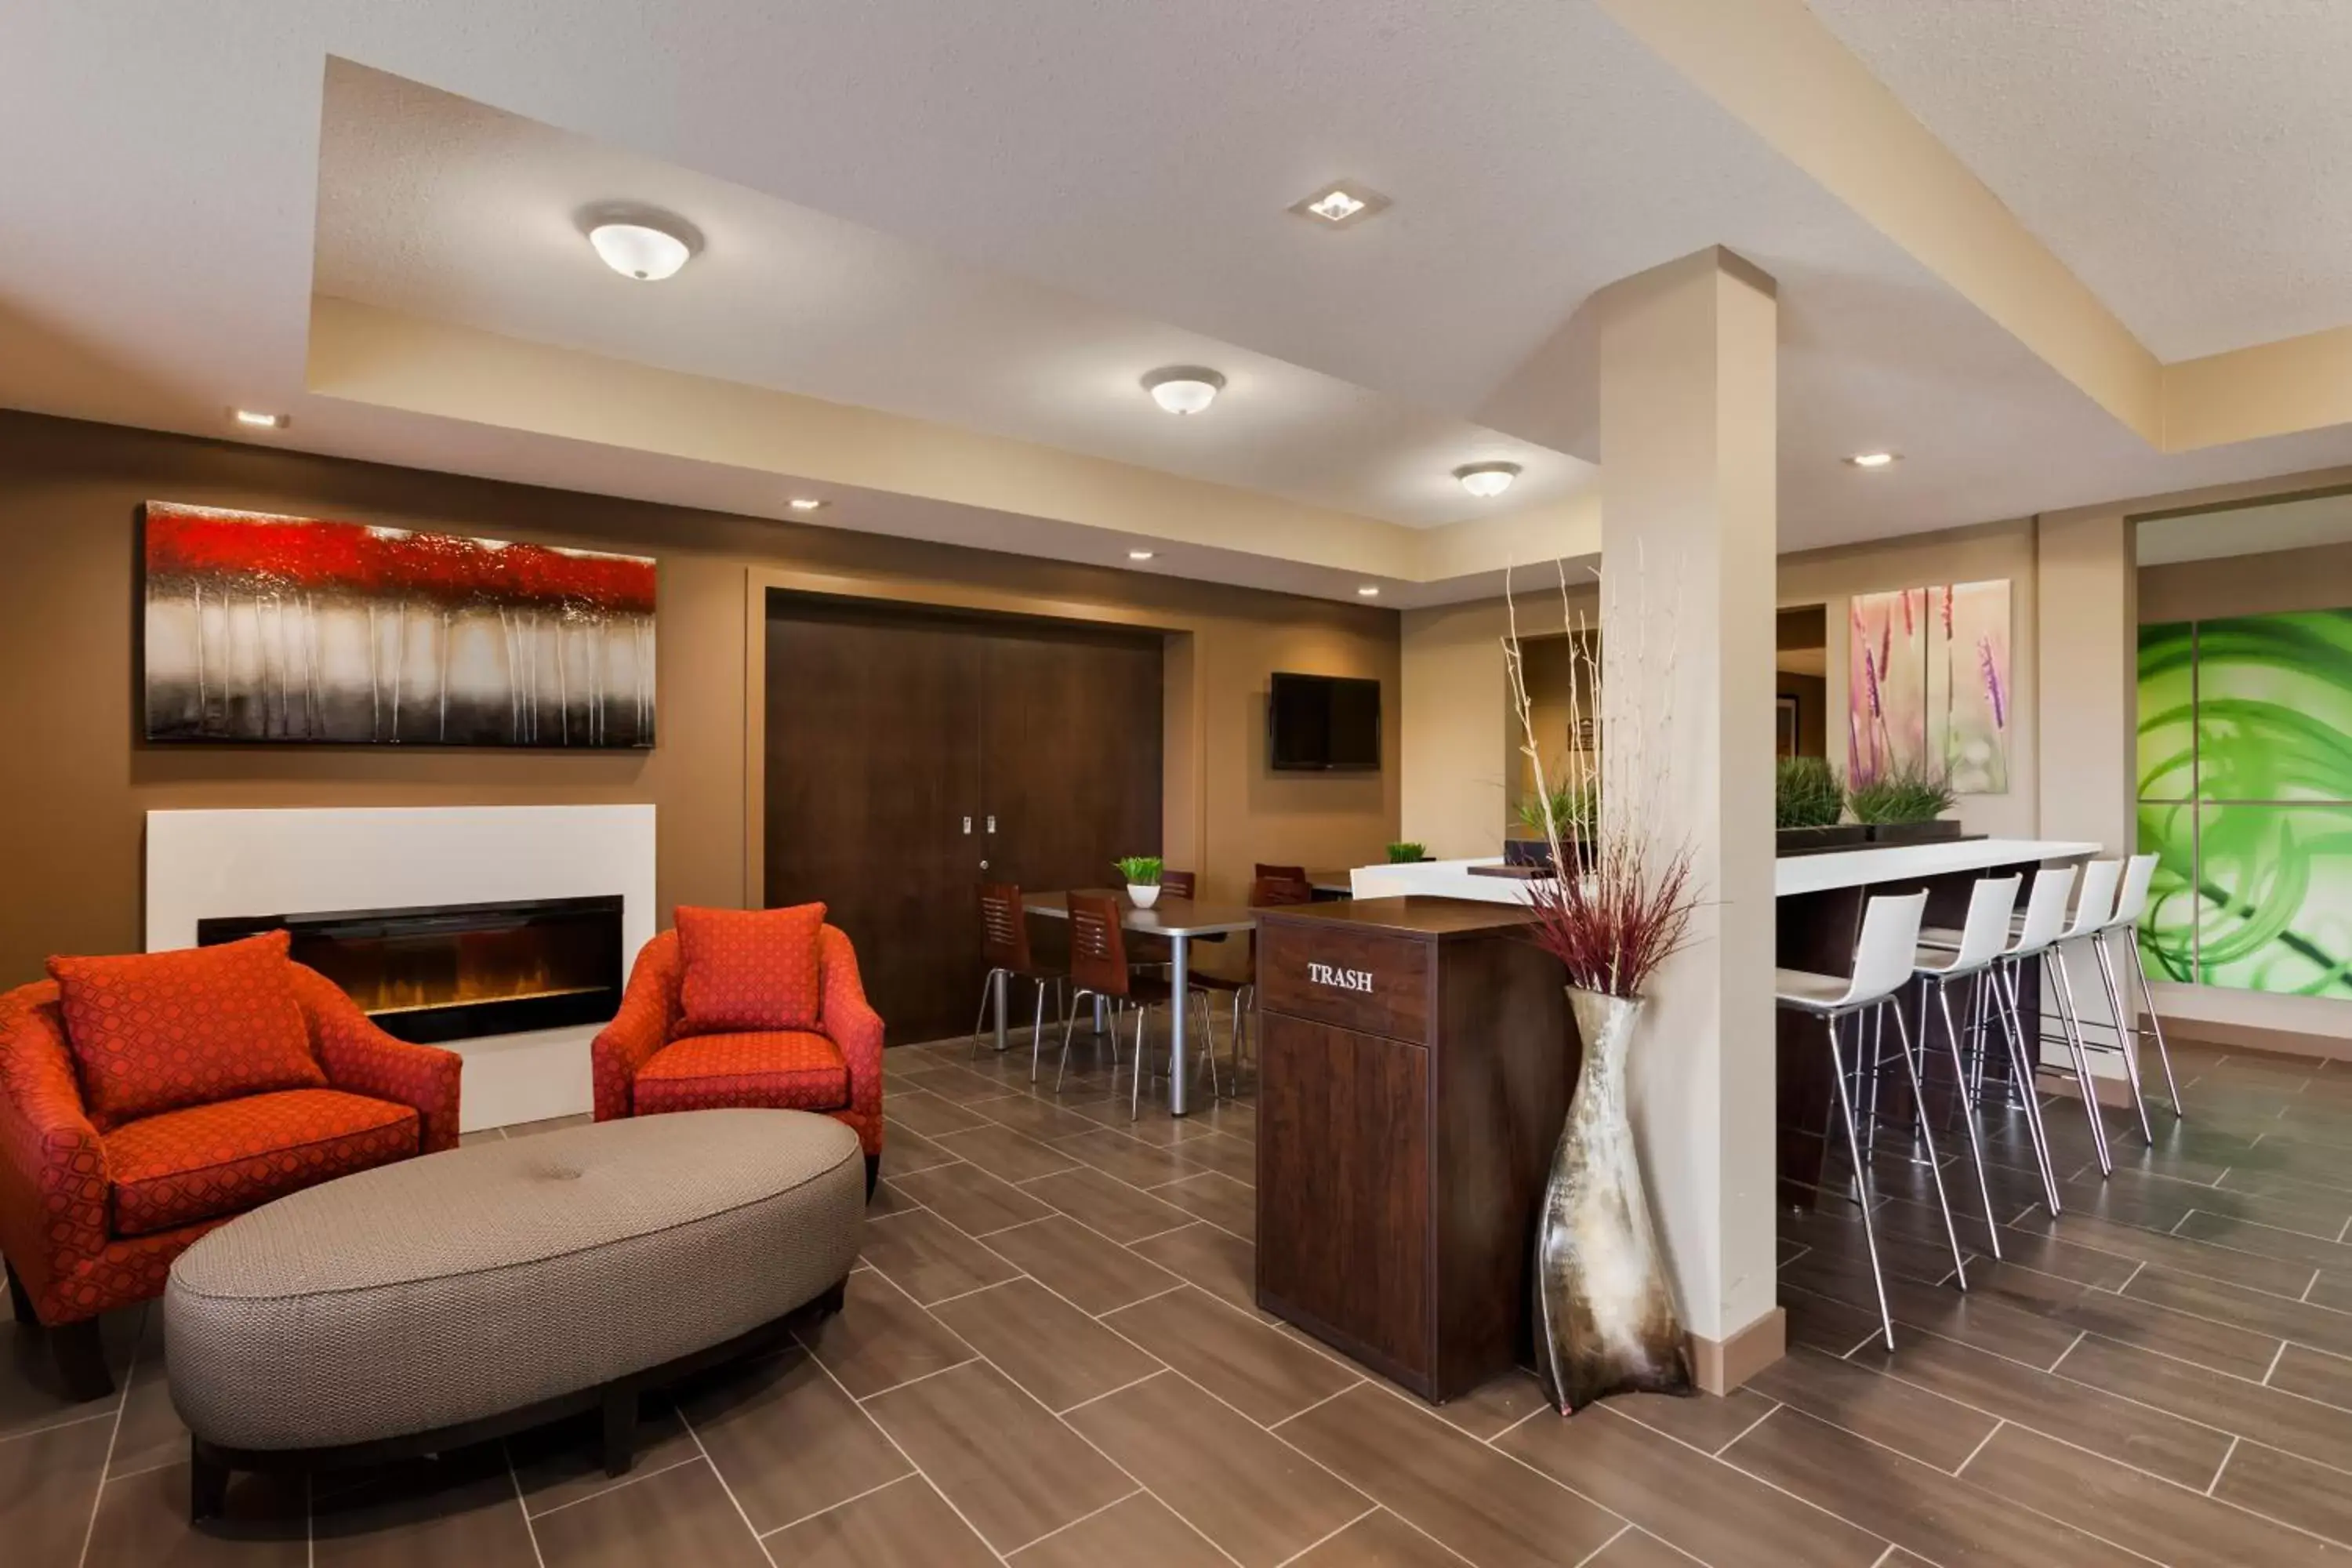 Lobby or reception, Lobby/Reception in Microtel Inn & Suites by Wyndham Lloydminster